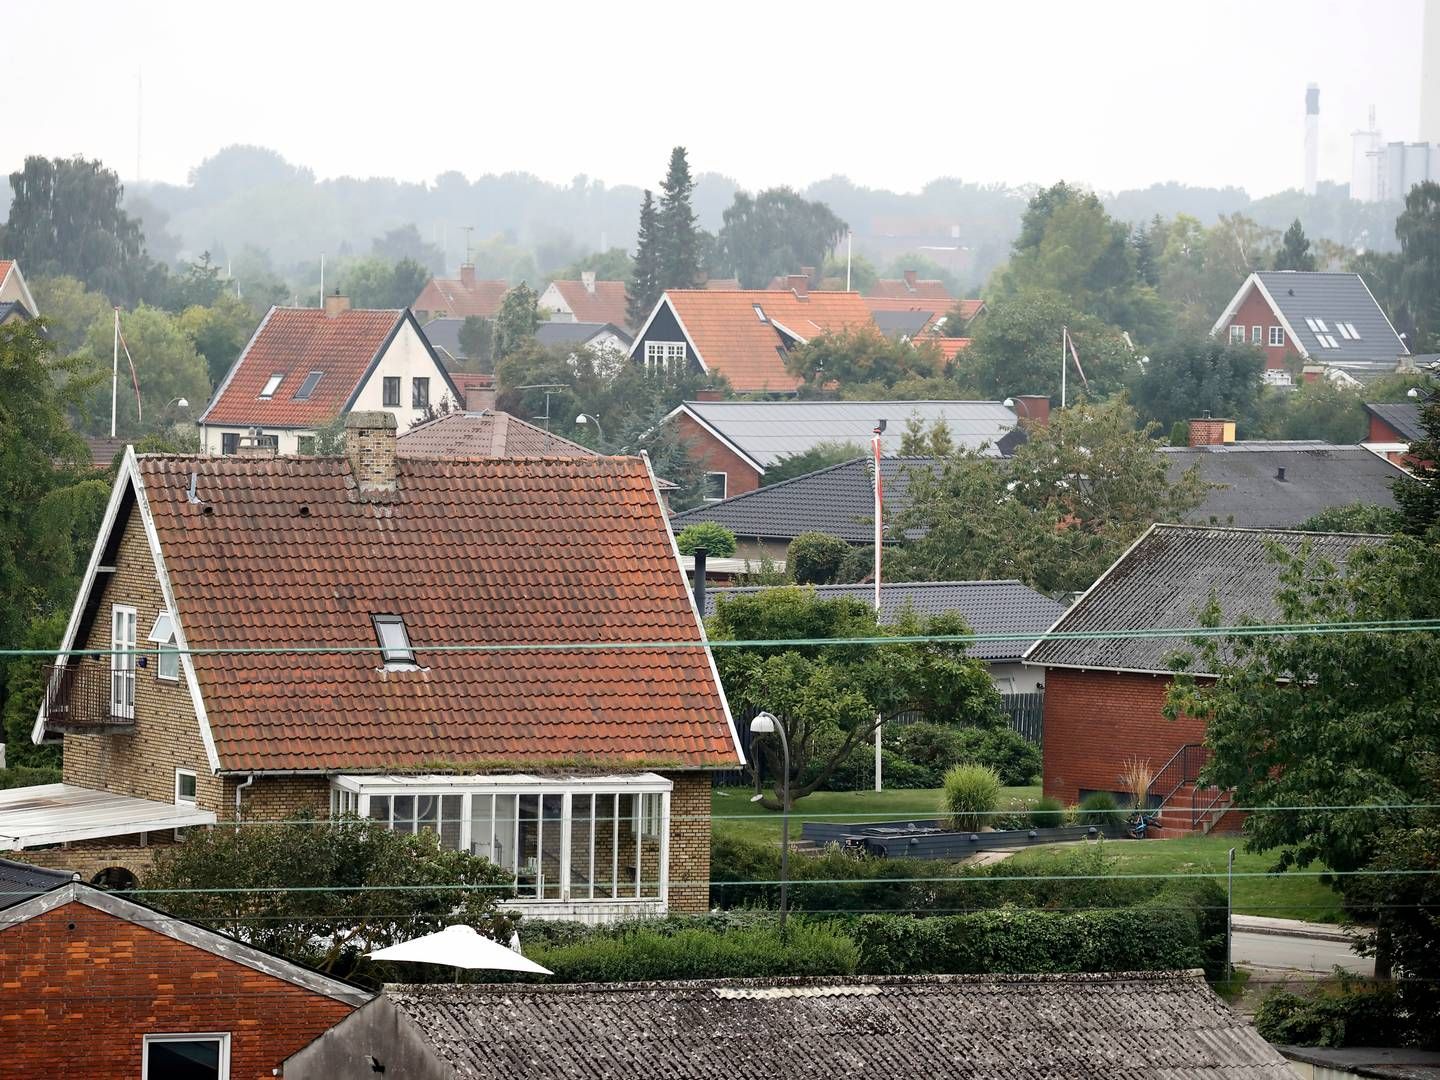 De mange fejl i de foreløbige ejendomsvurderinger, har slået skår i danskernes tillid, viser en ny voxmeter-undersøgelse. | Photo: Jens Dresling